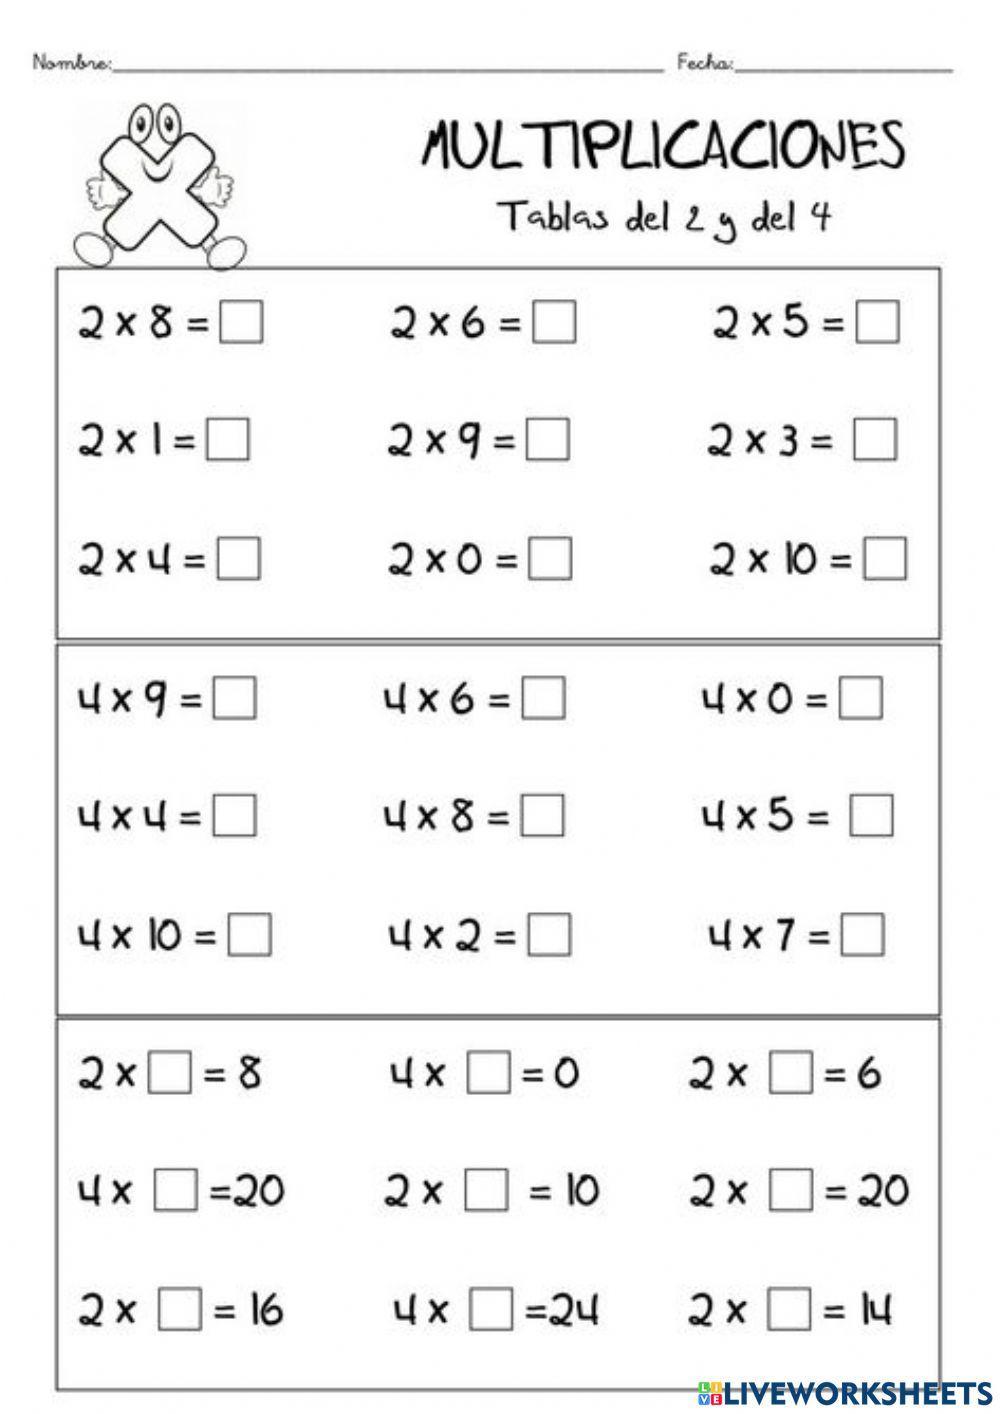 Las tablas de multiplicar de 1 al 10